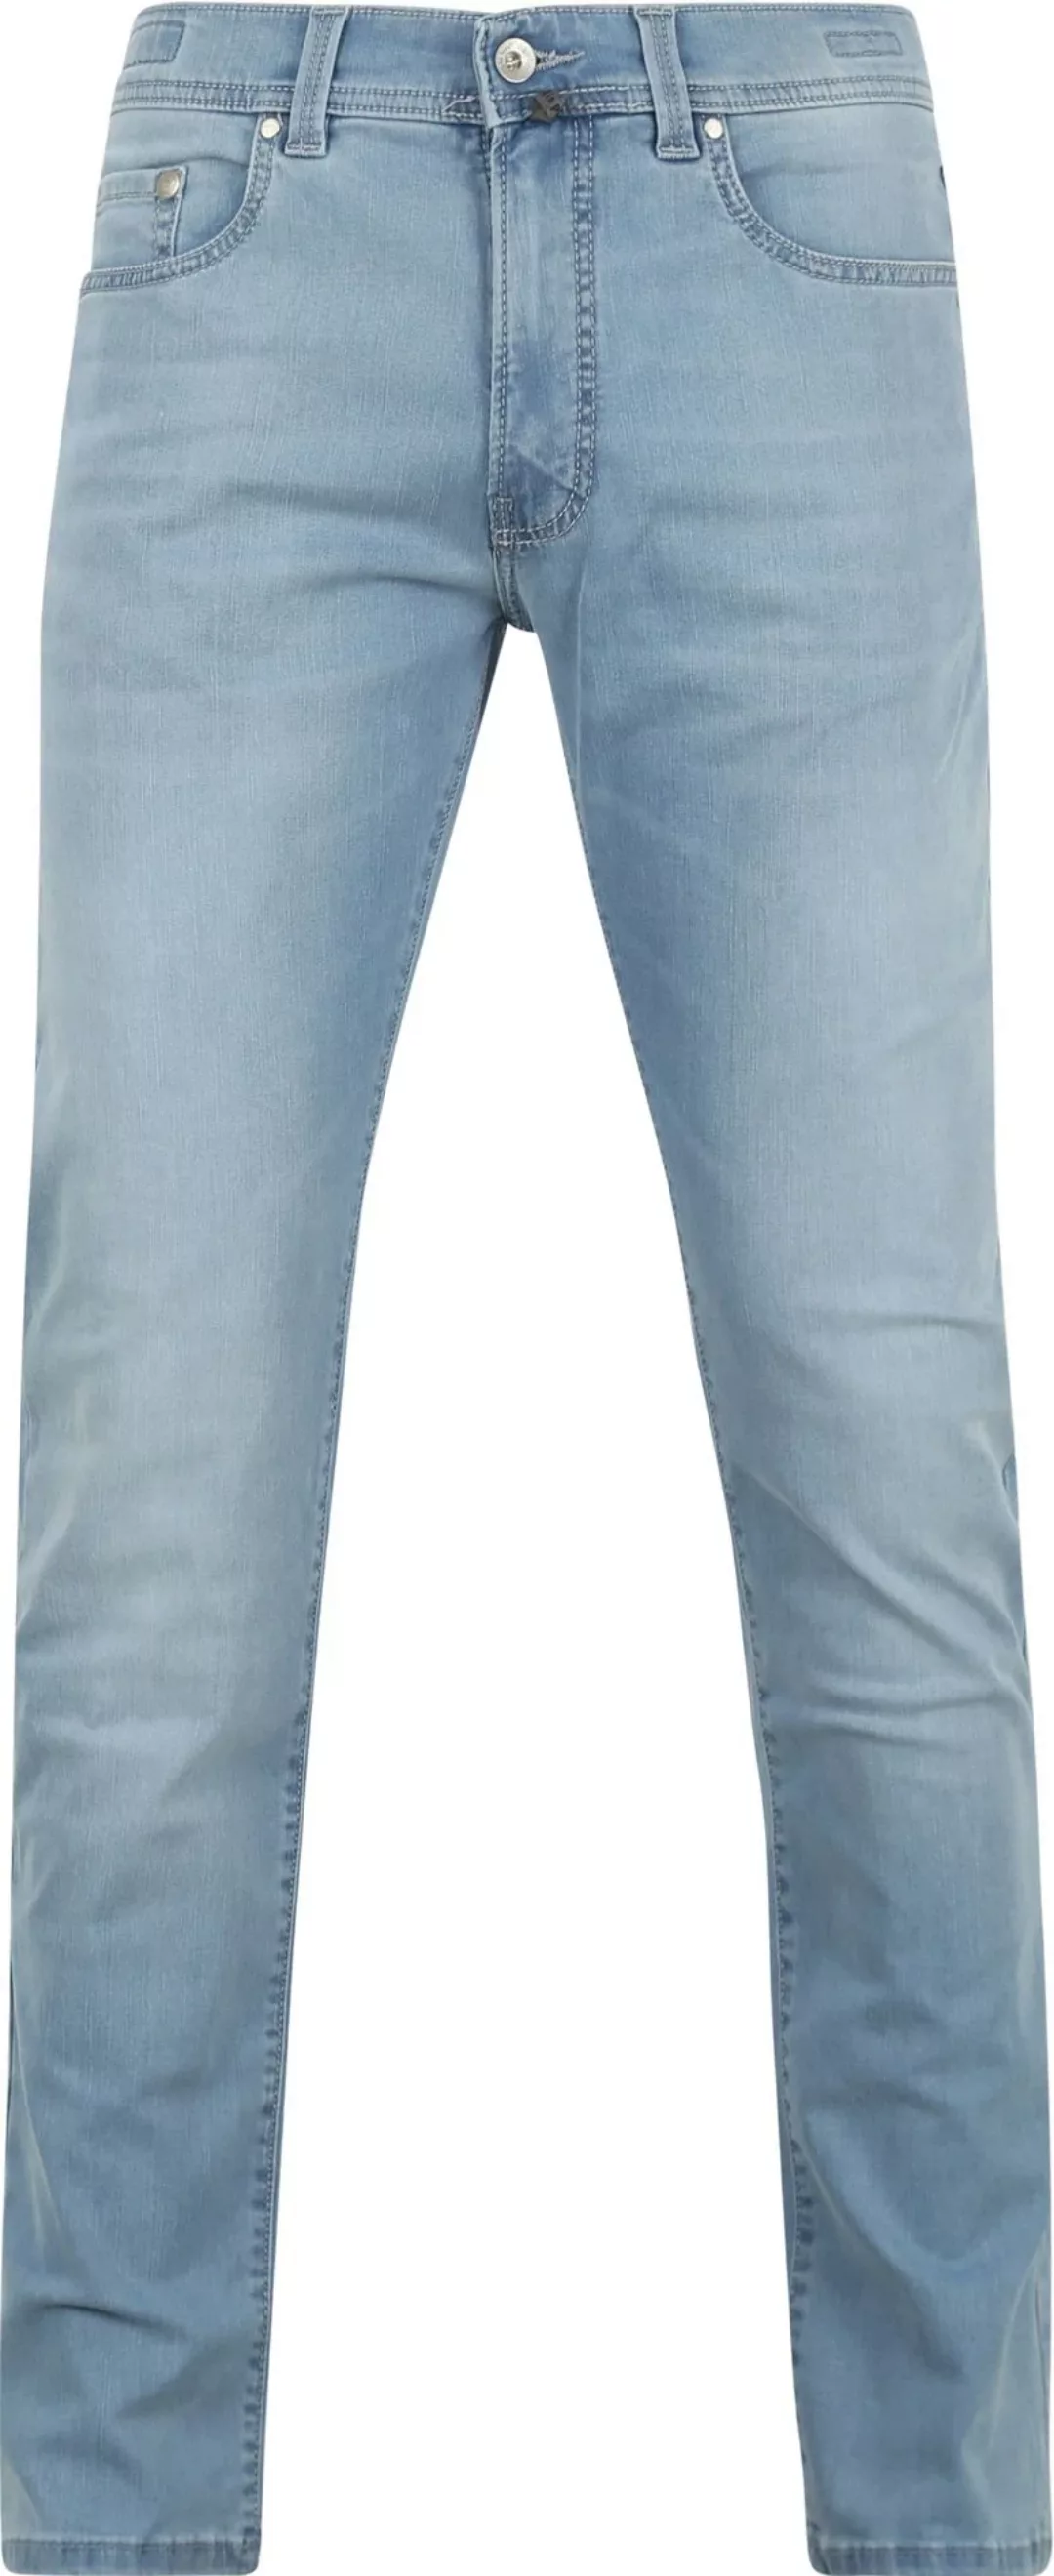 Pierre Cardin Jeans Lyon Tapered Future Flex Hellblau  - Größe W 31 - L 32 günstig online kaufen